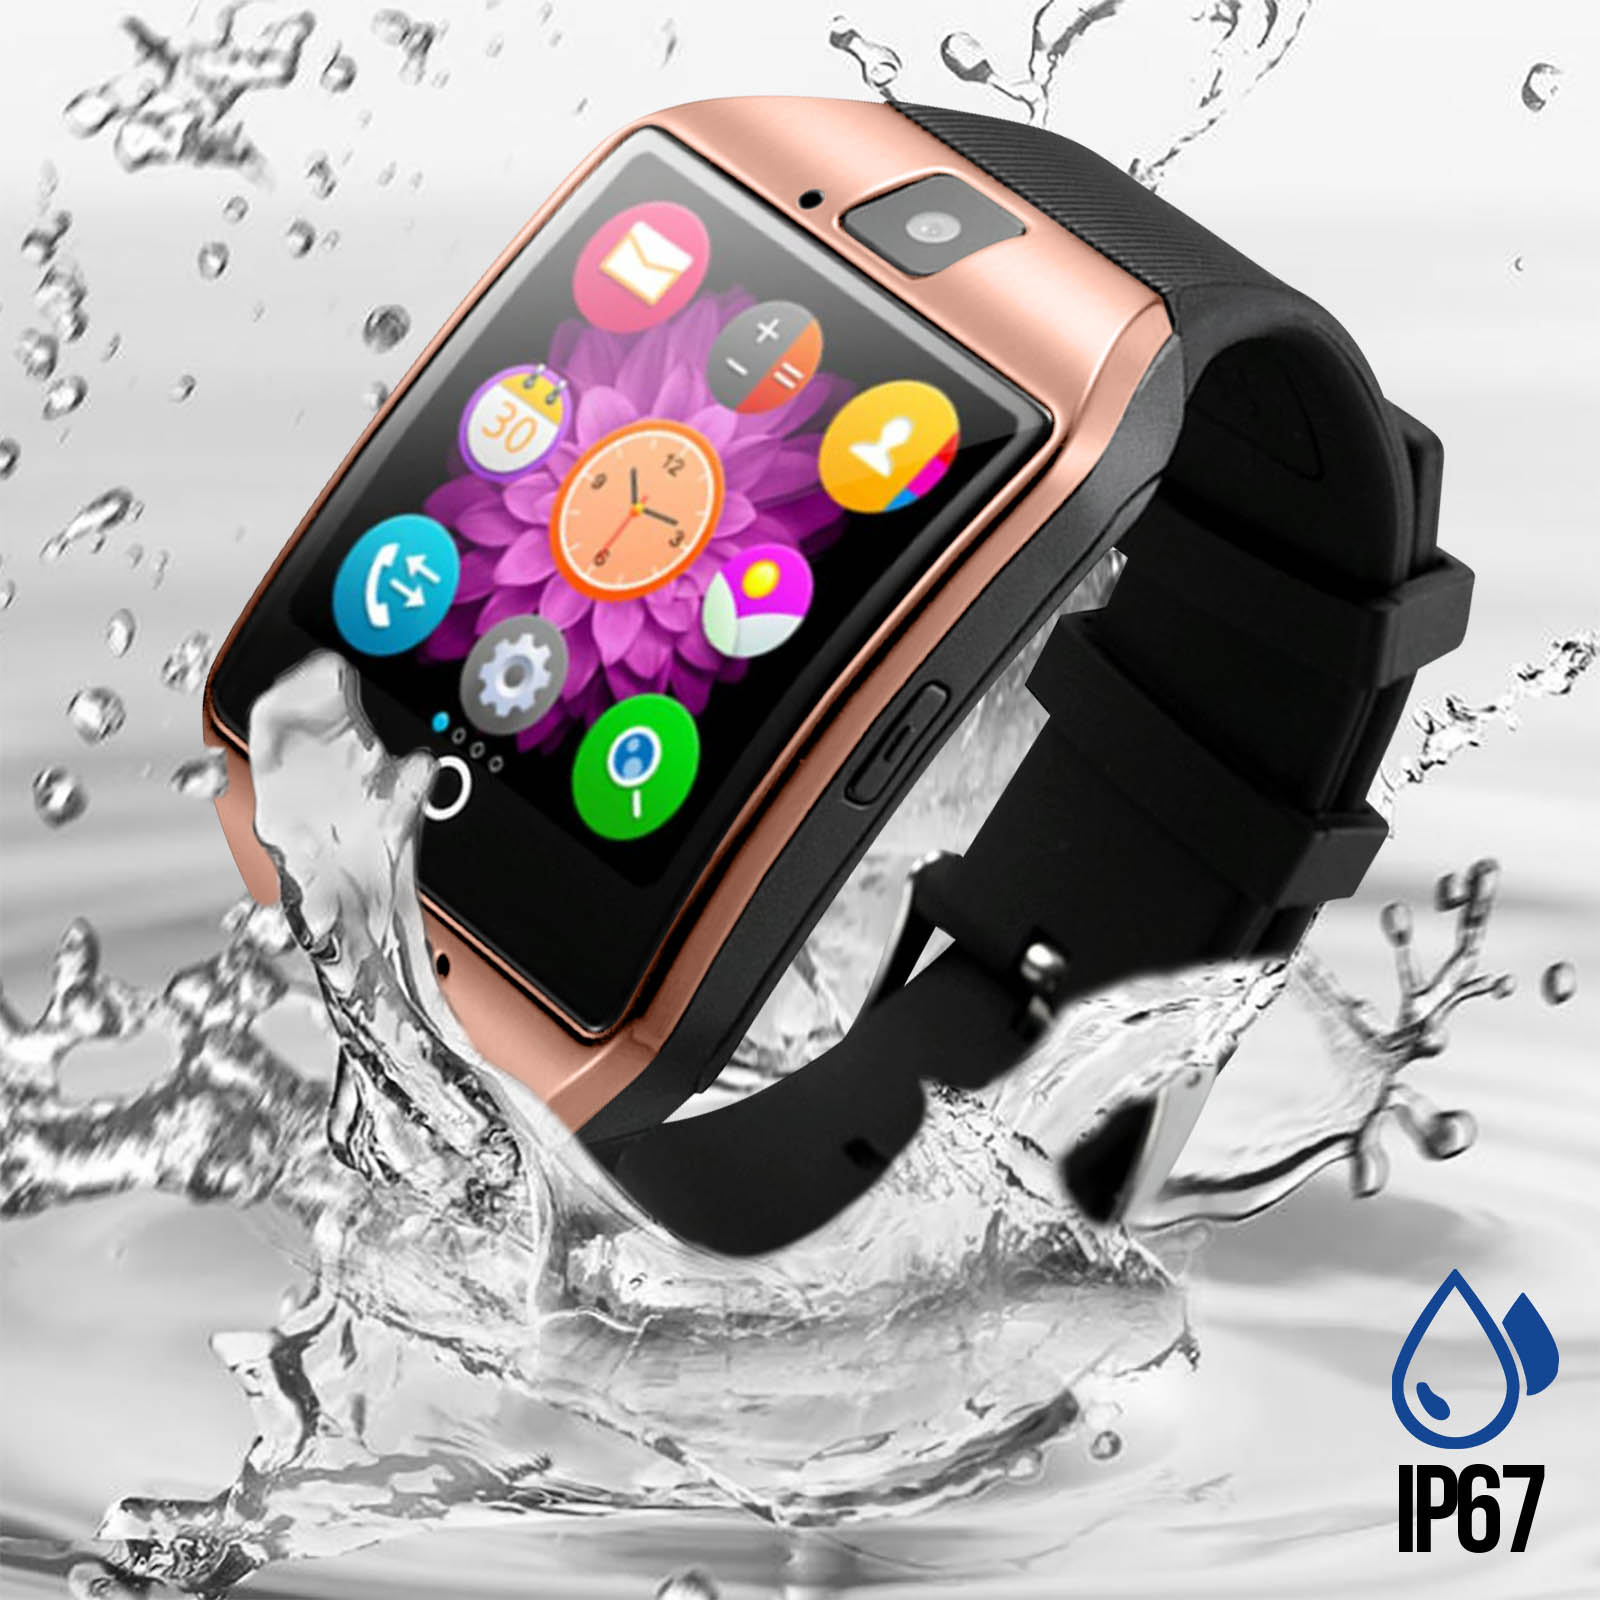 Smartwatch impermeabile IP67 con fotocamera, chiamate Bluetooth,  cardiofrequenzimetro e activity tracker - rosa / nero - Italiano